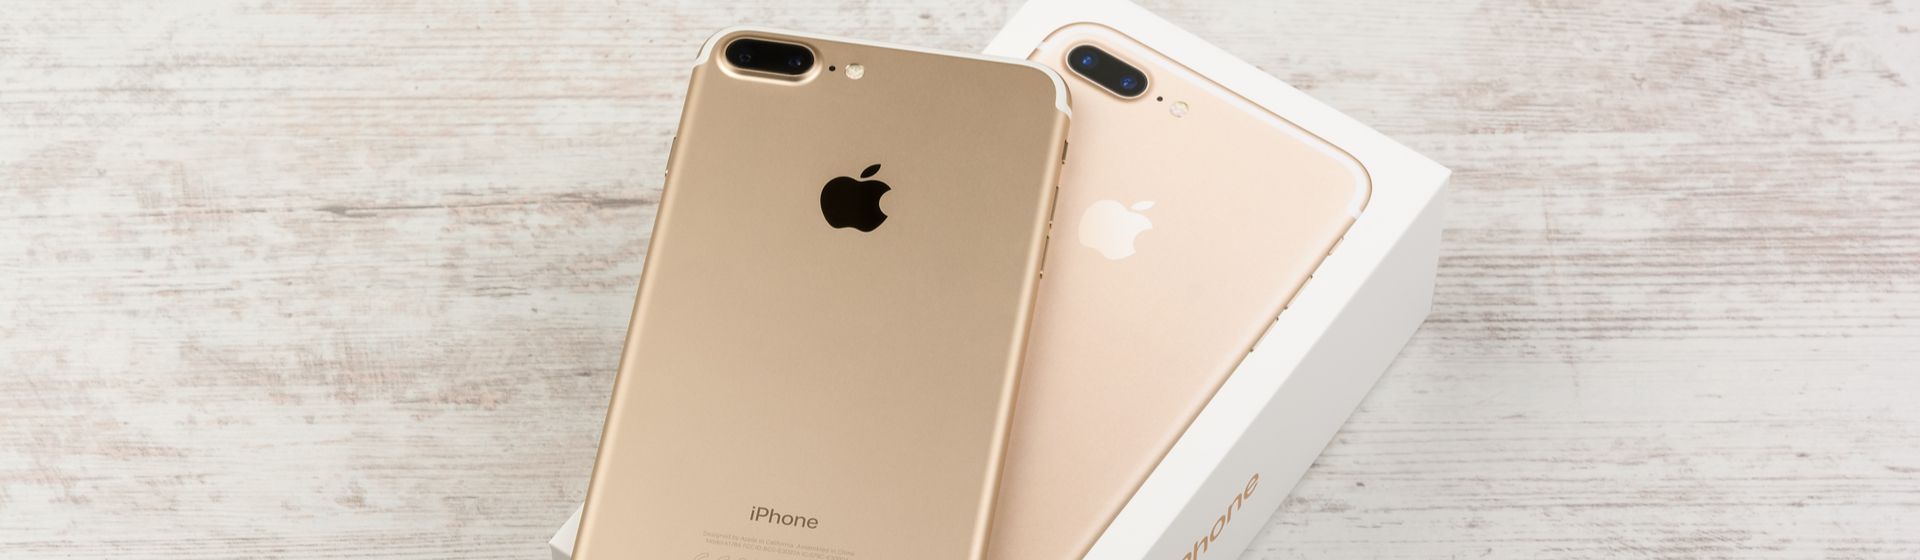 Celular iPhone 7 Plus na cor ouro sob sua embalagem